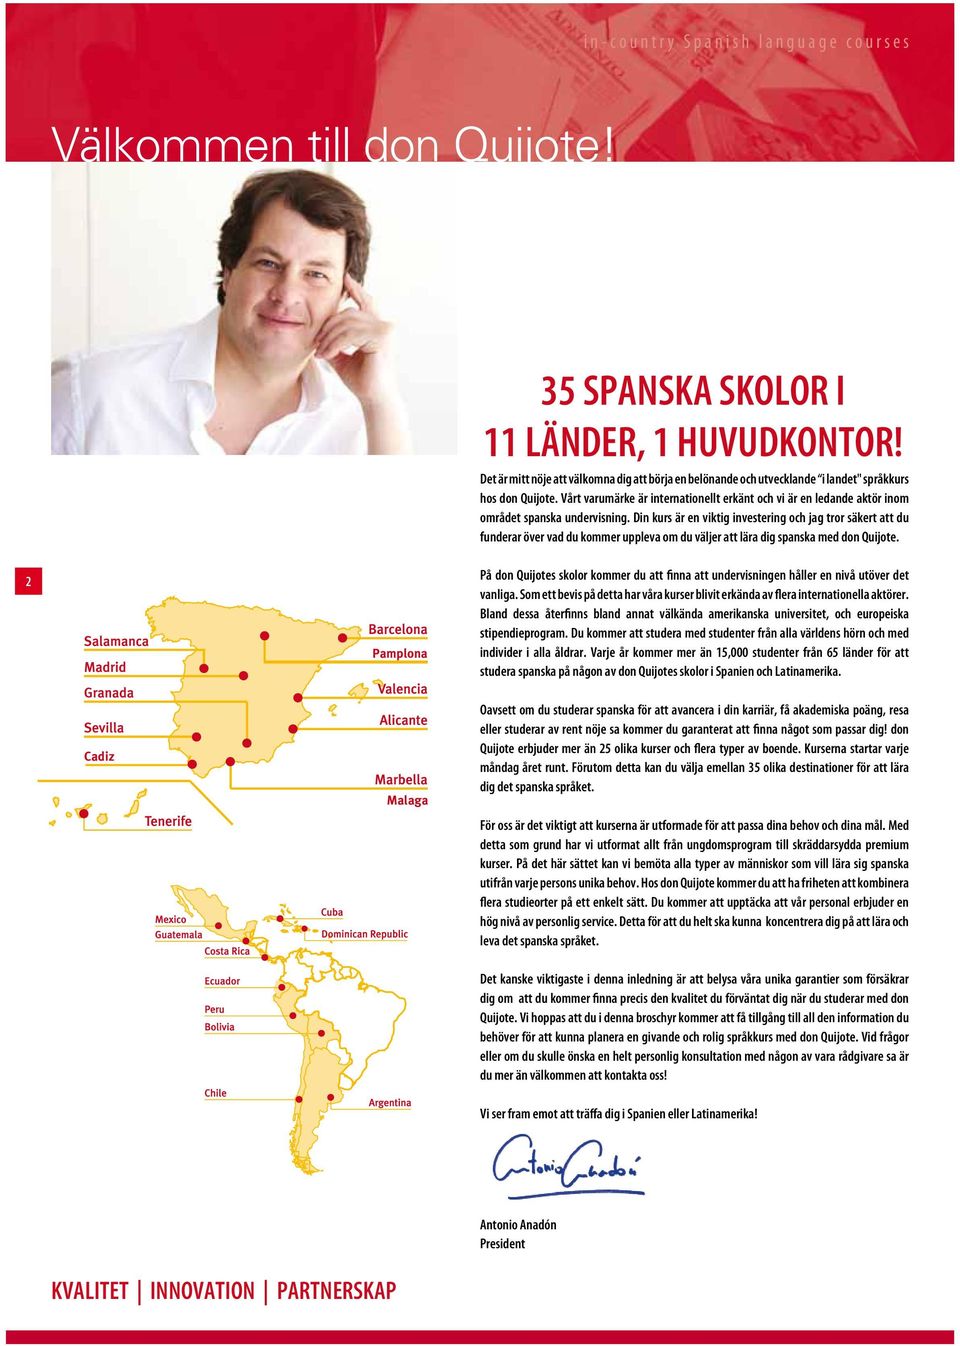 Vårt varumärke är internationellt erkänt och vi är en ledande aktör inom området spanska undervisning.